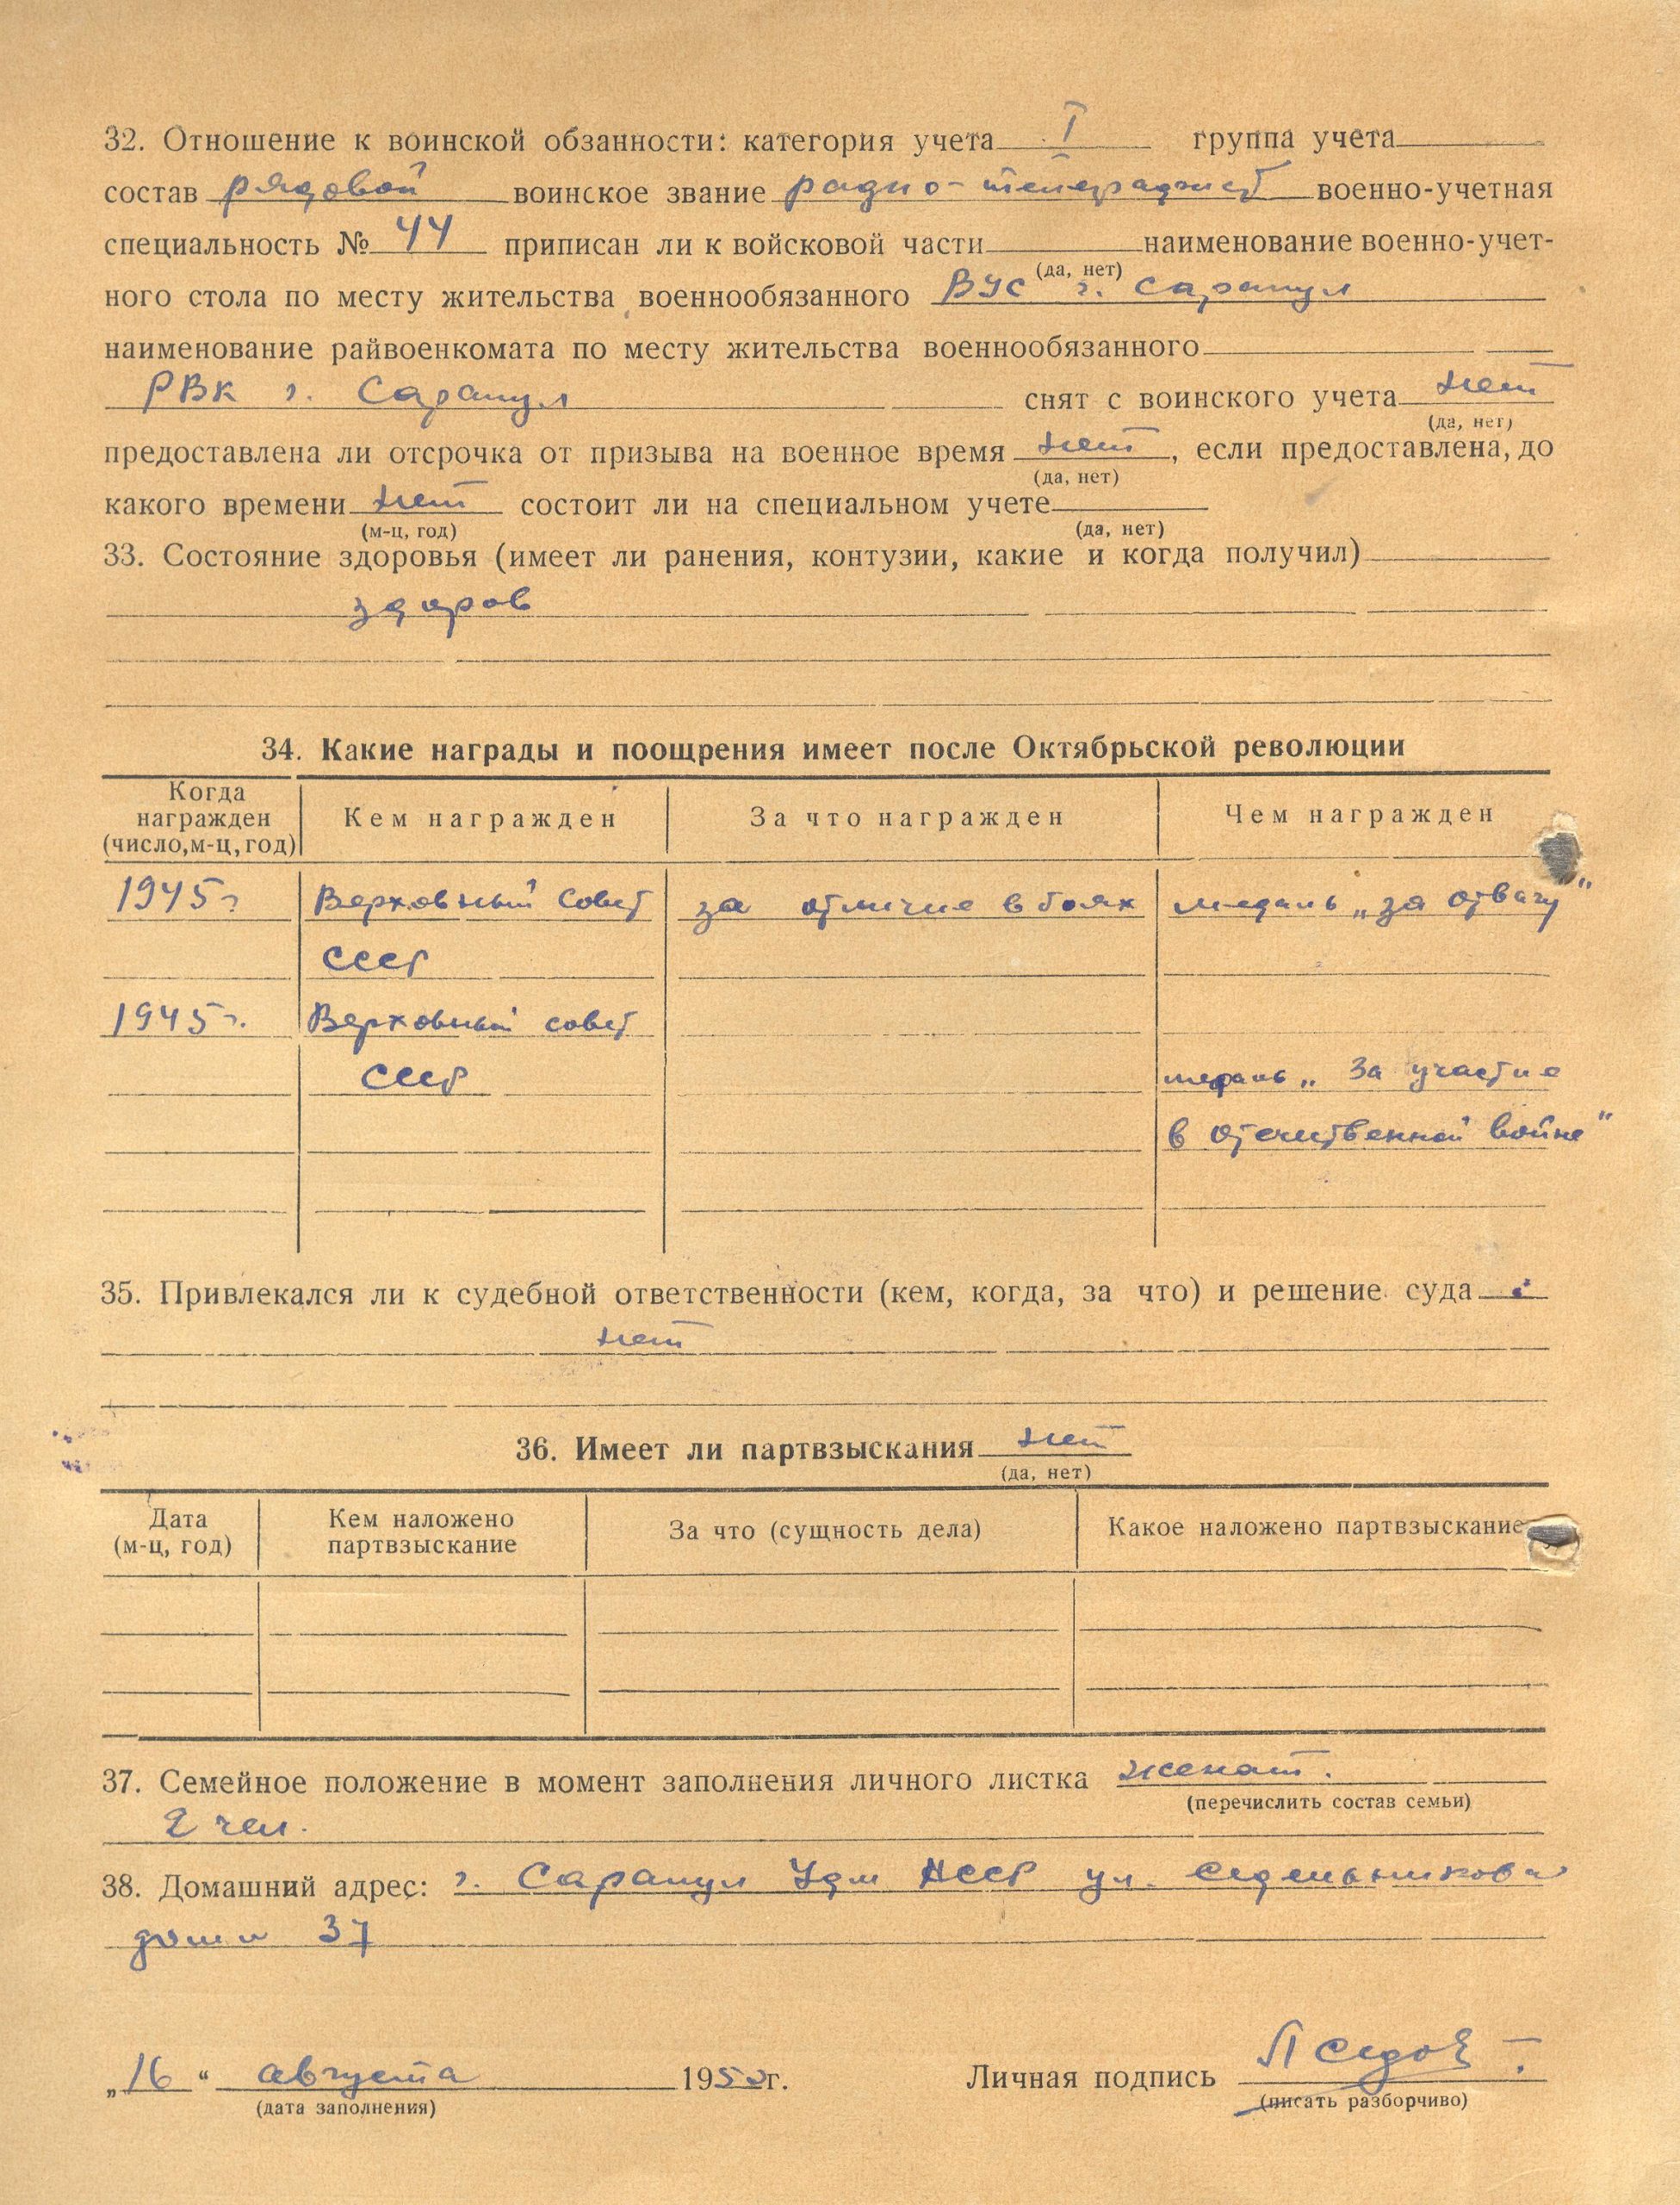 Лист из Личного дела (3) 1950г. Архив АО «Сарапульский радиозавод»